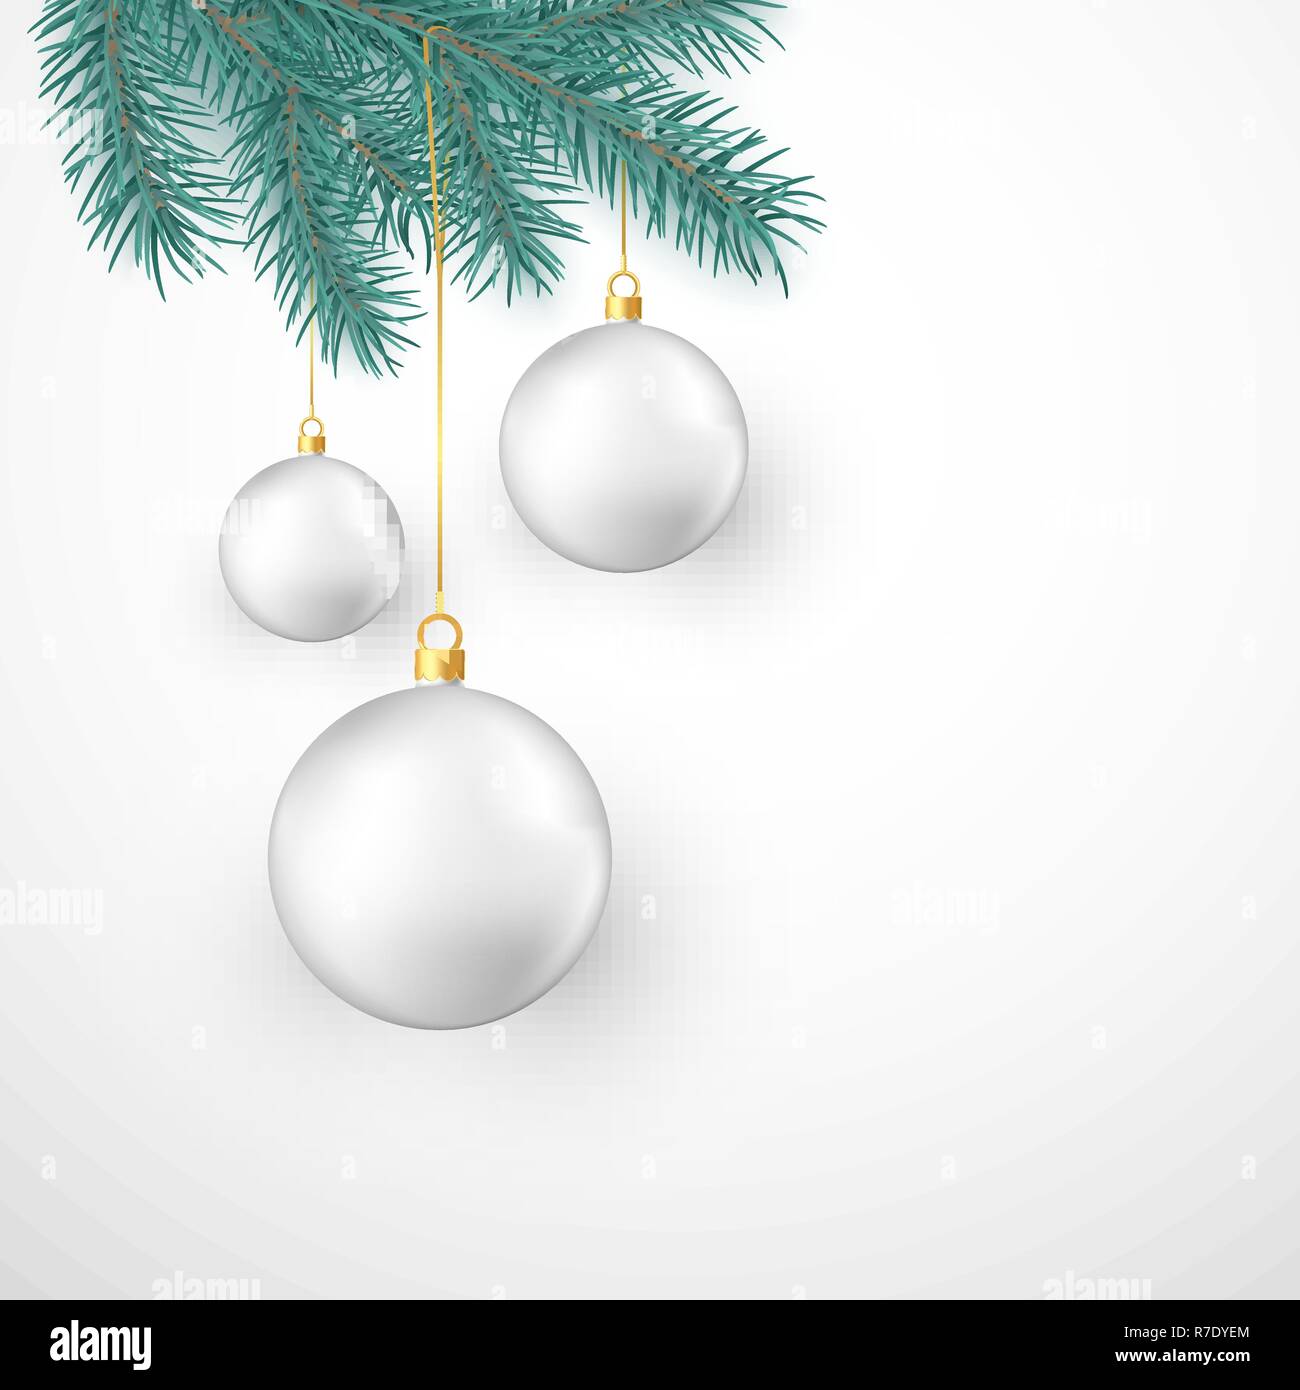 Bianco palle di Natale appeso sul ramo di abete. Vacanze inverno elemento di decoro. Illustrazione di vettore isolato su sfondo bianco Illustrazione Vettoriale